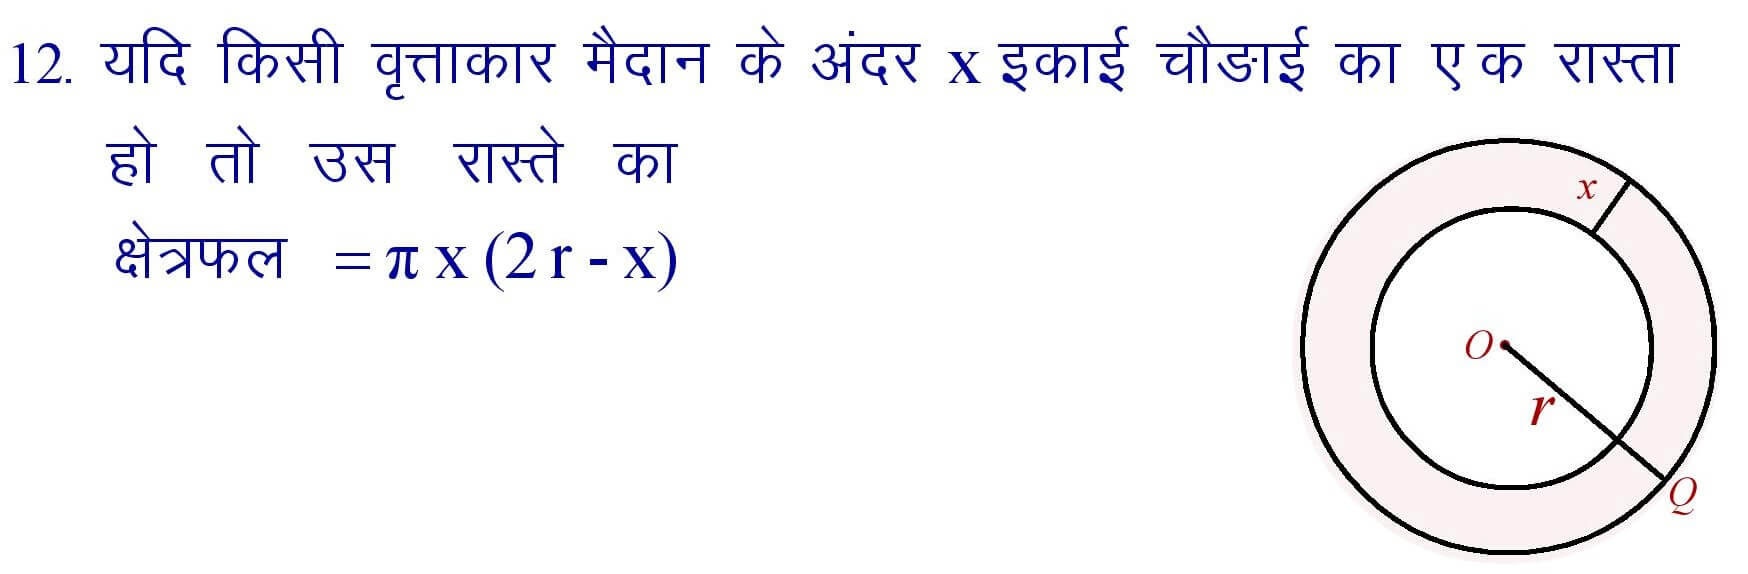 Circle Formula in Hindi